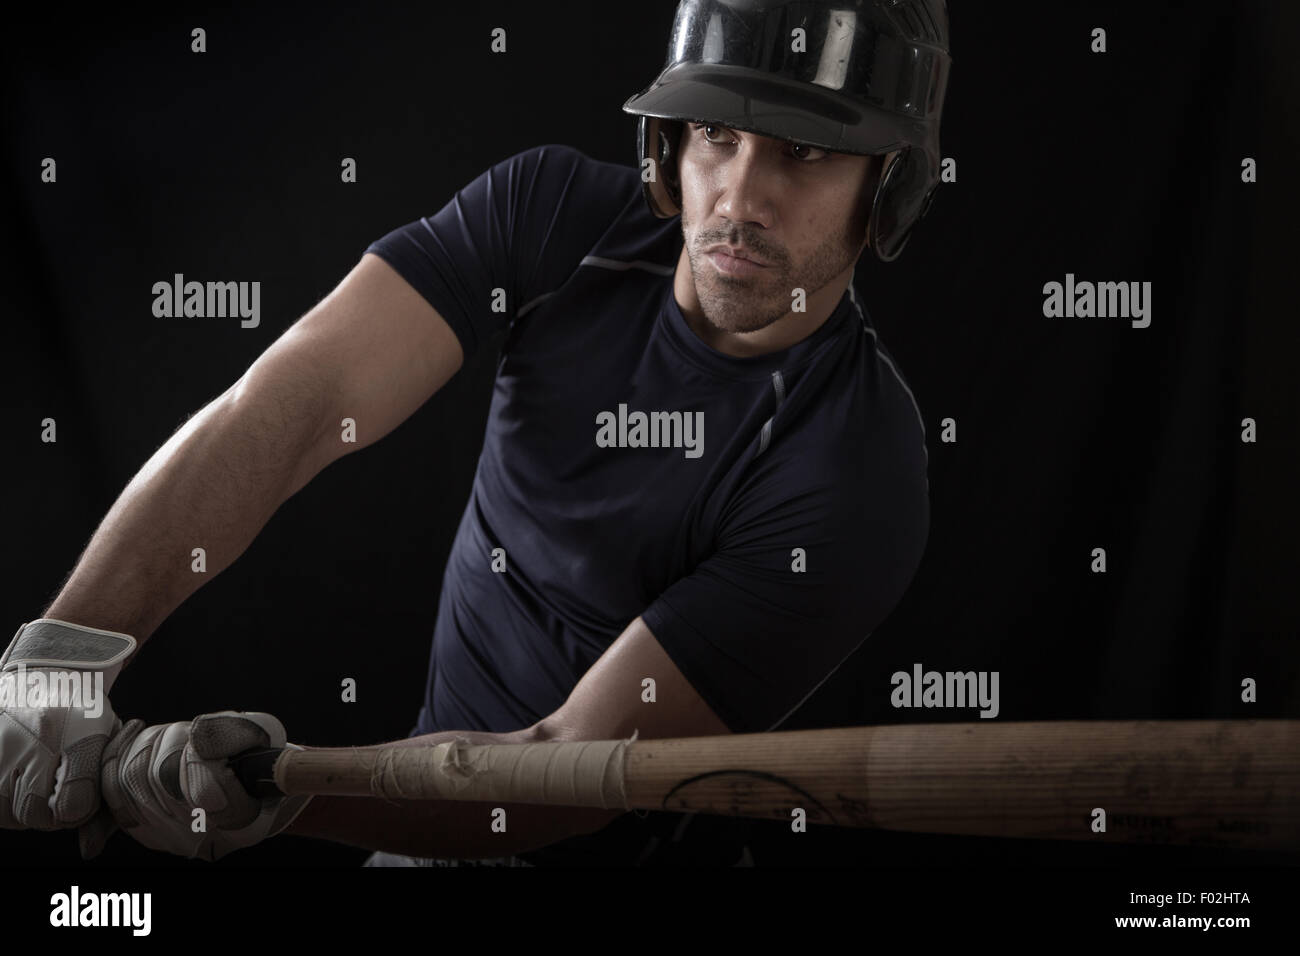 Portrait d'un joueur de baseball se balançant une chauve-souris Banque D'Images